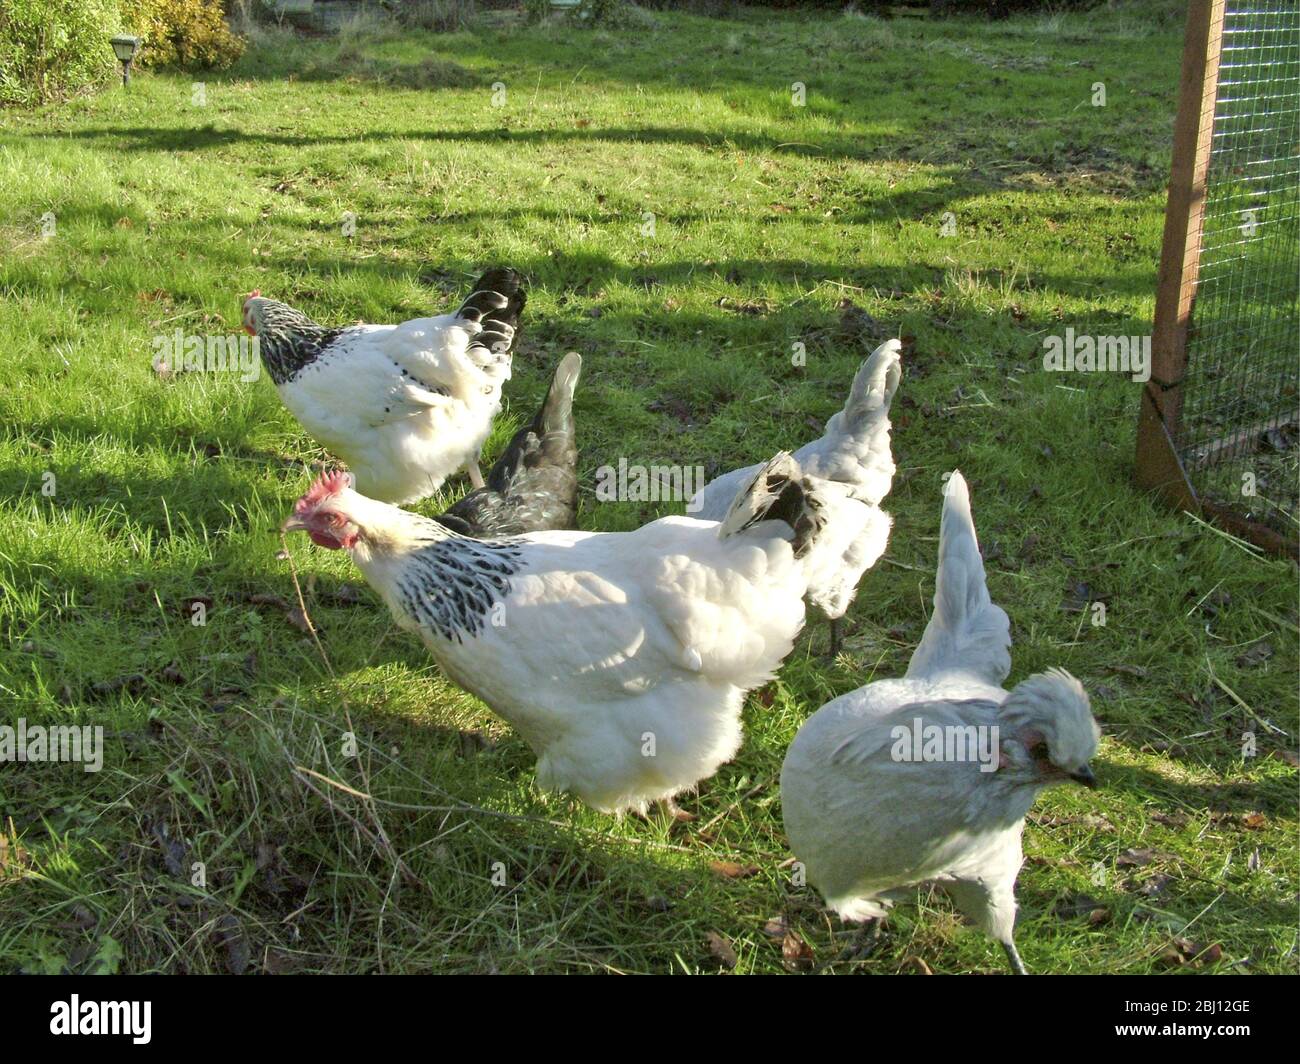 Pollos corriendo gratis en el jardín - Foto de stock